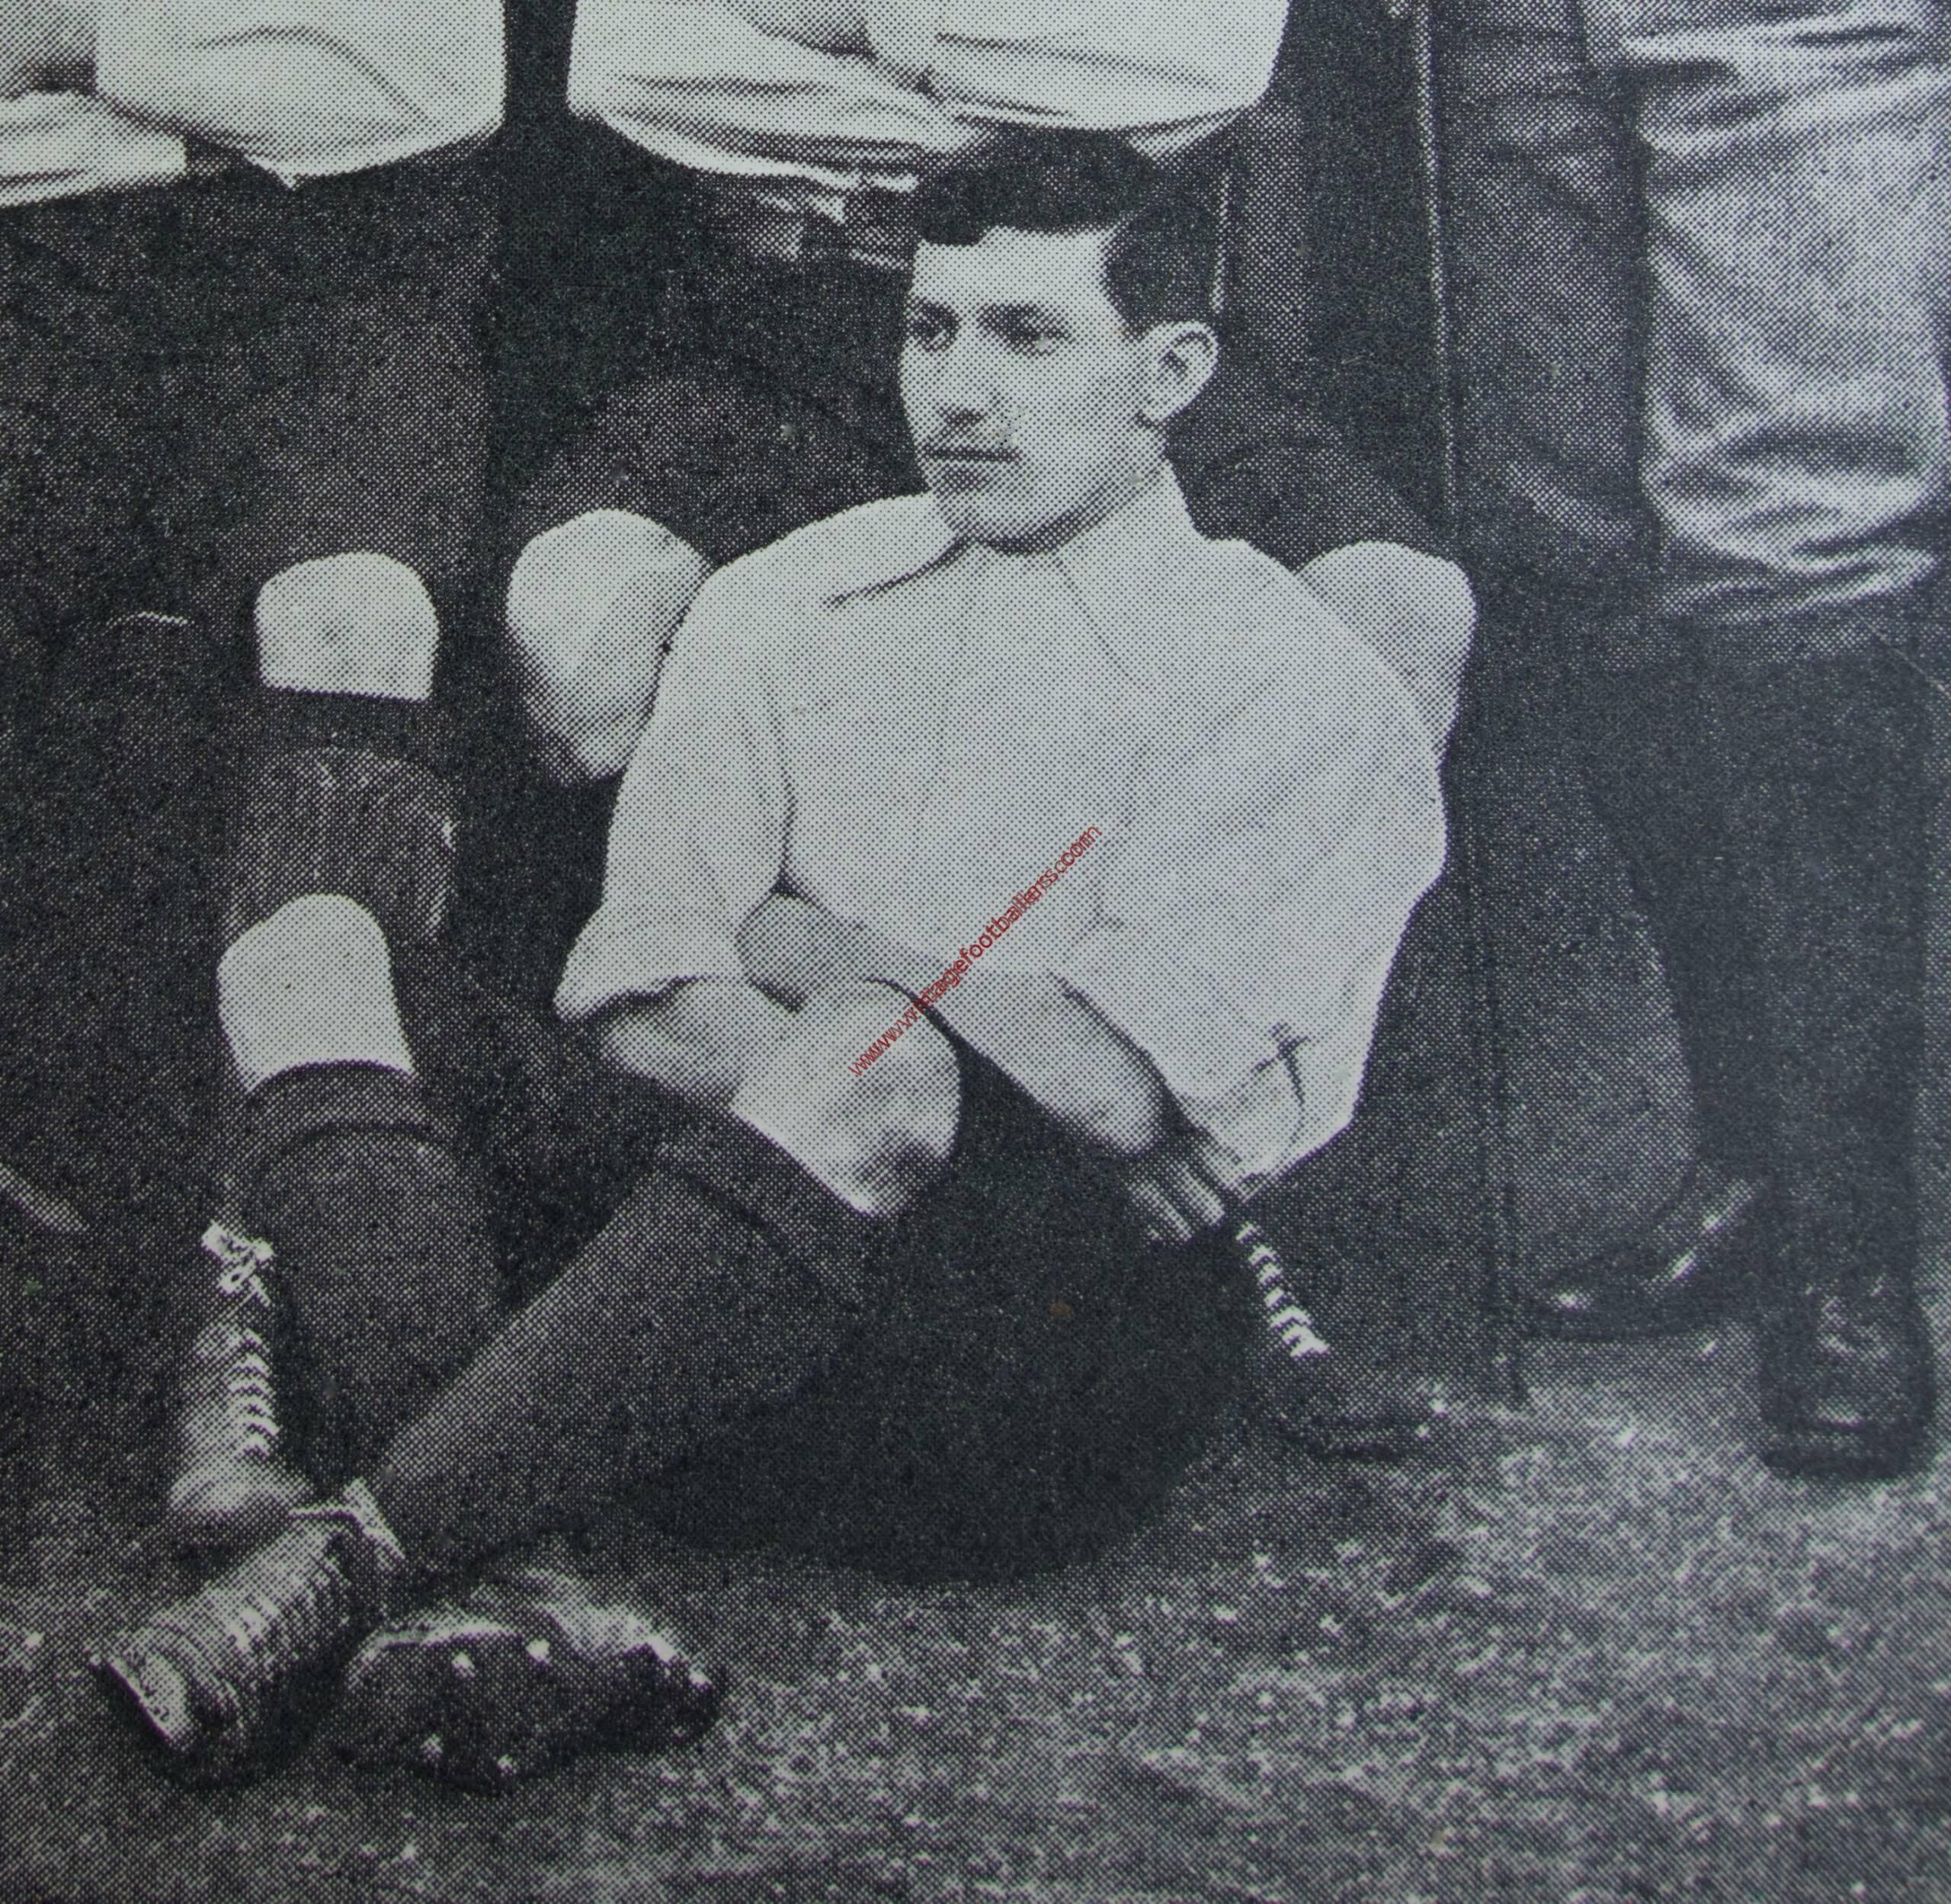 Needham Ernest "Nudger" Image 4 Sheffield United 1893 - Vintage Footballers